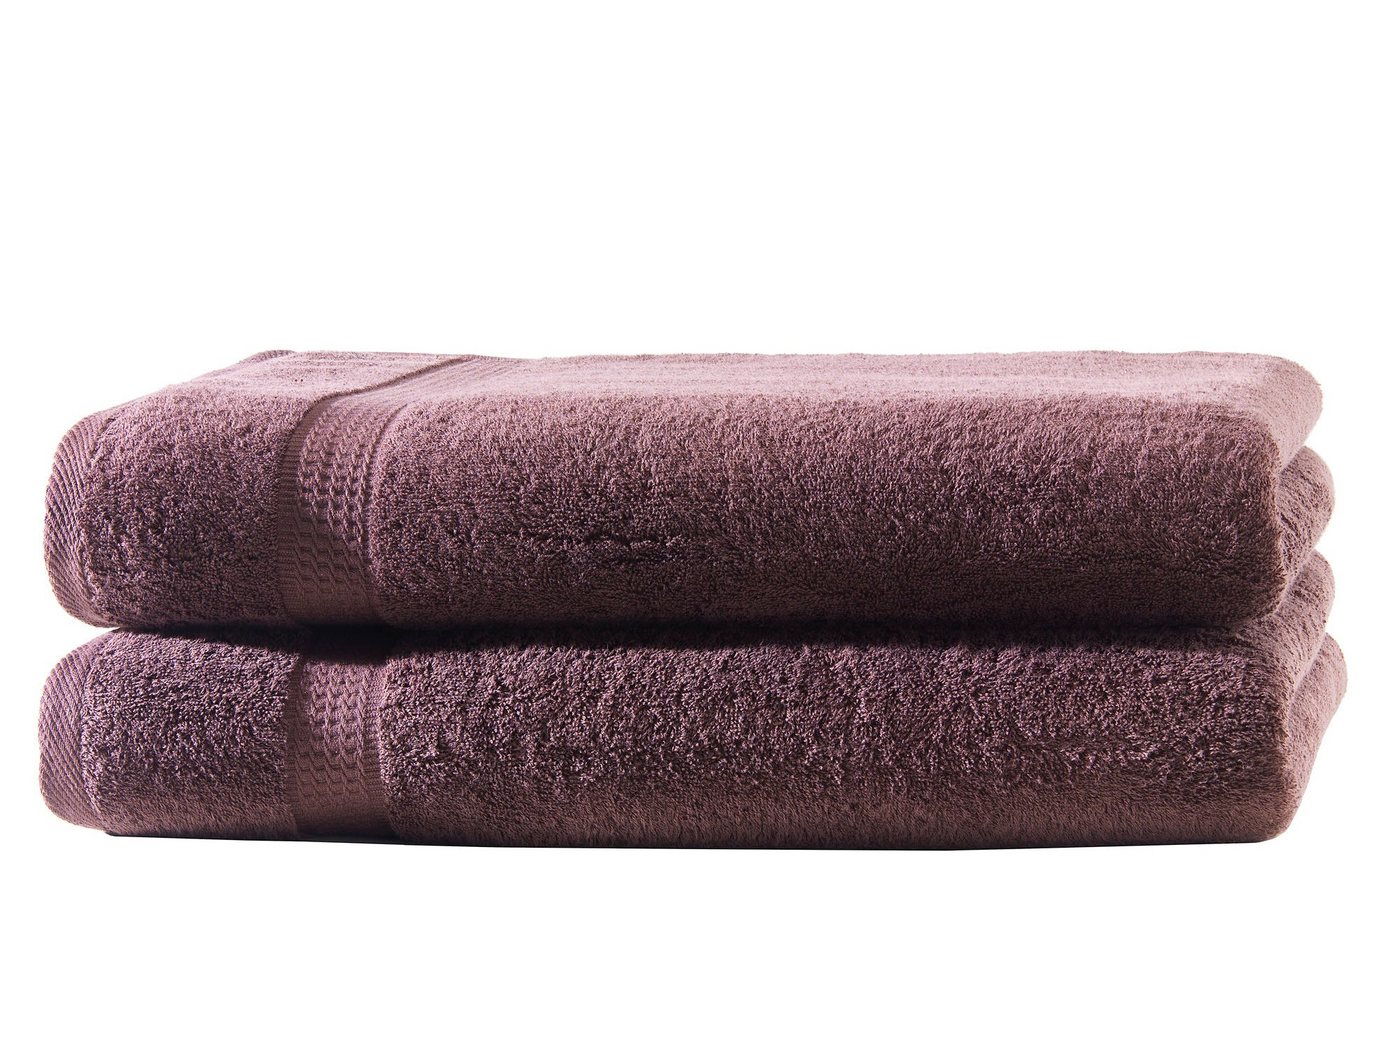 Hometex Premium Textiles Handtuch in Premium Qualität 500 g/m², Feinster Frottier-Stoff 100% Baumwolle, 2x Duschtuch, Kuschelig weich, saugfähig, Extra schwere, flauschige Hotel-Qualität von Hometex Premium Textiles